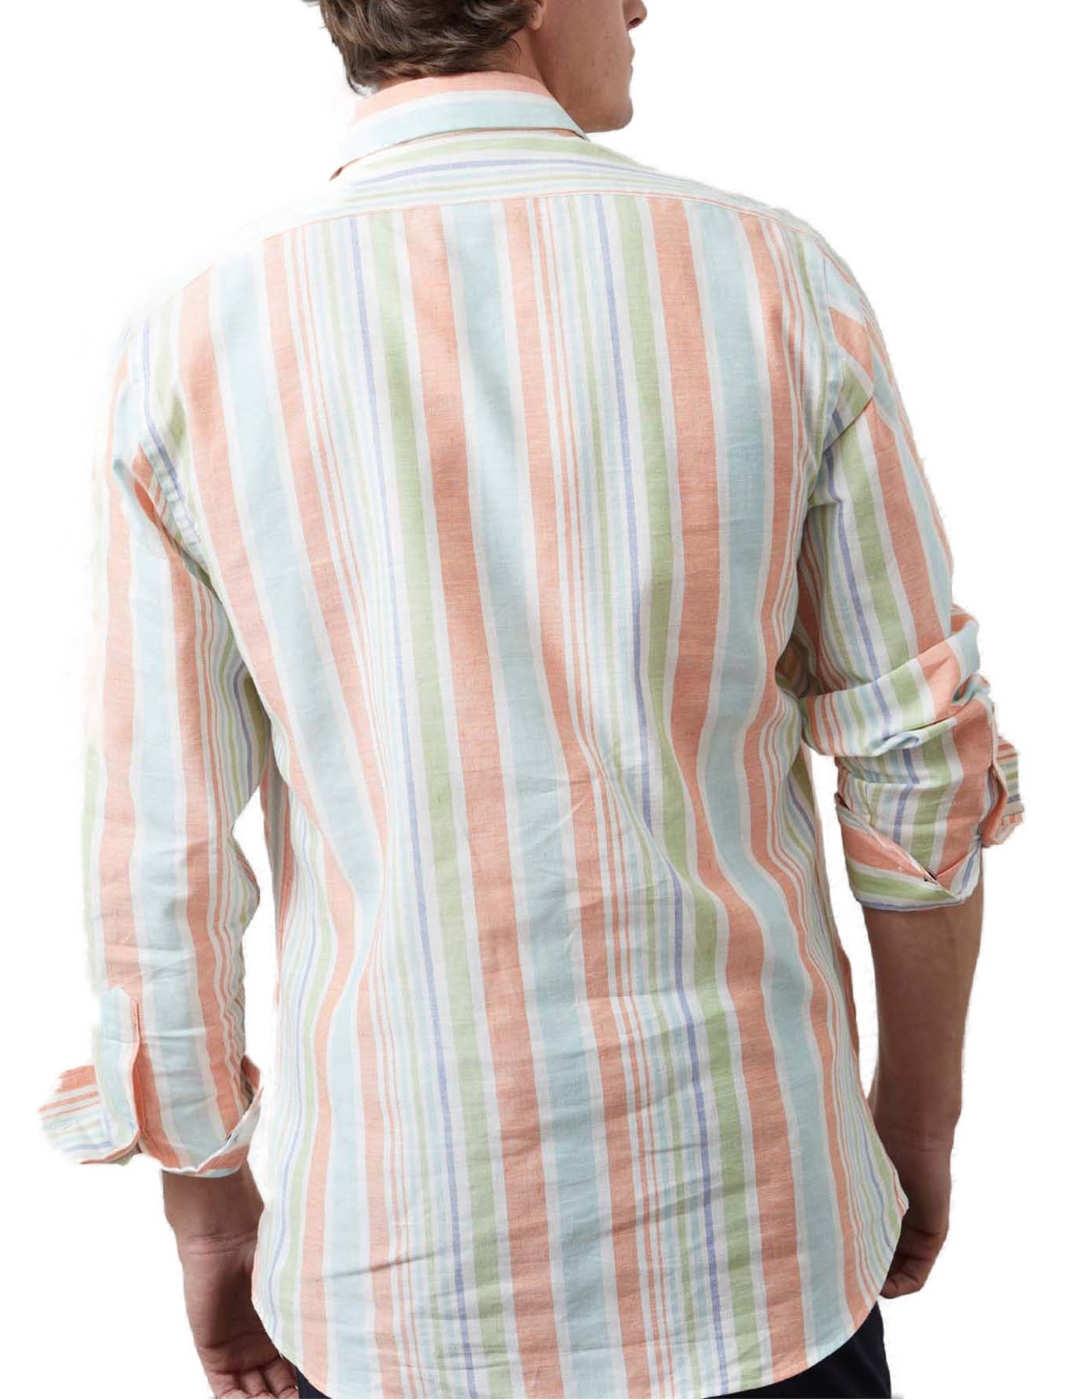 Camisa polera Altonadock rayas de lino para hombre